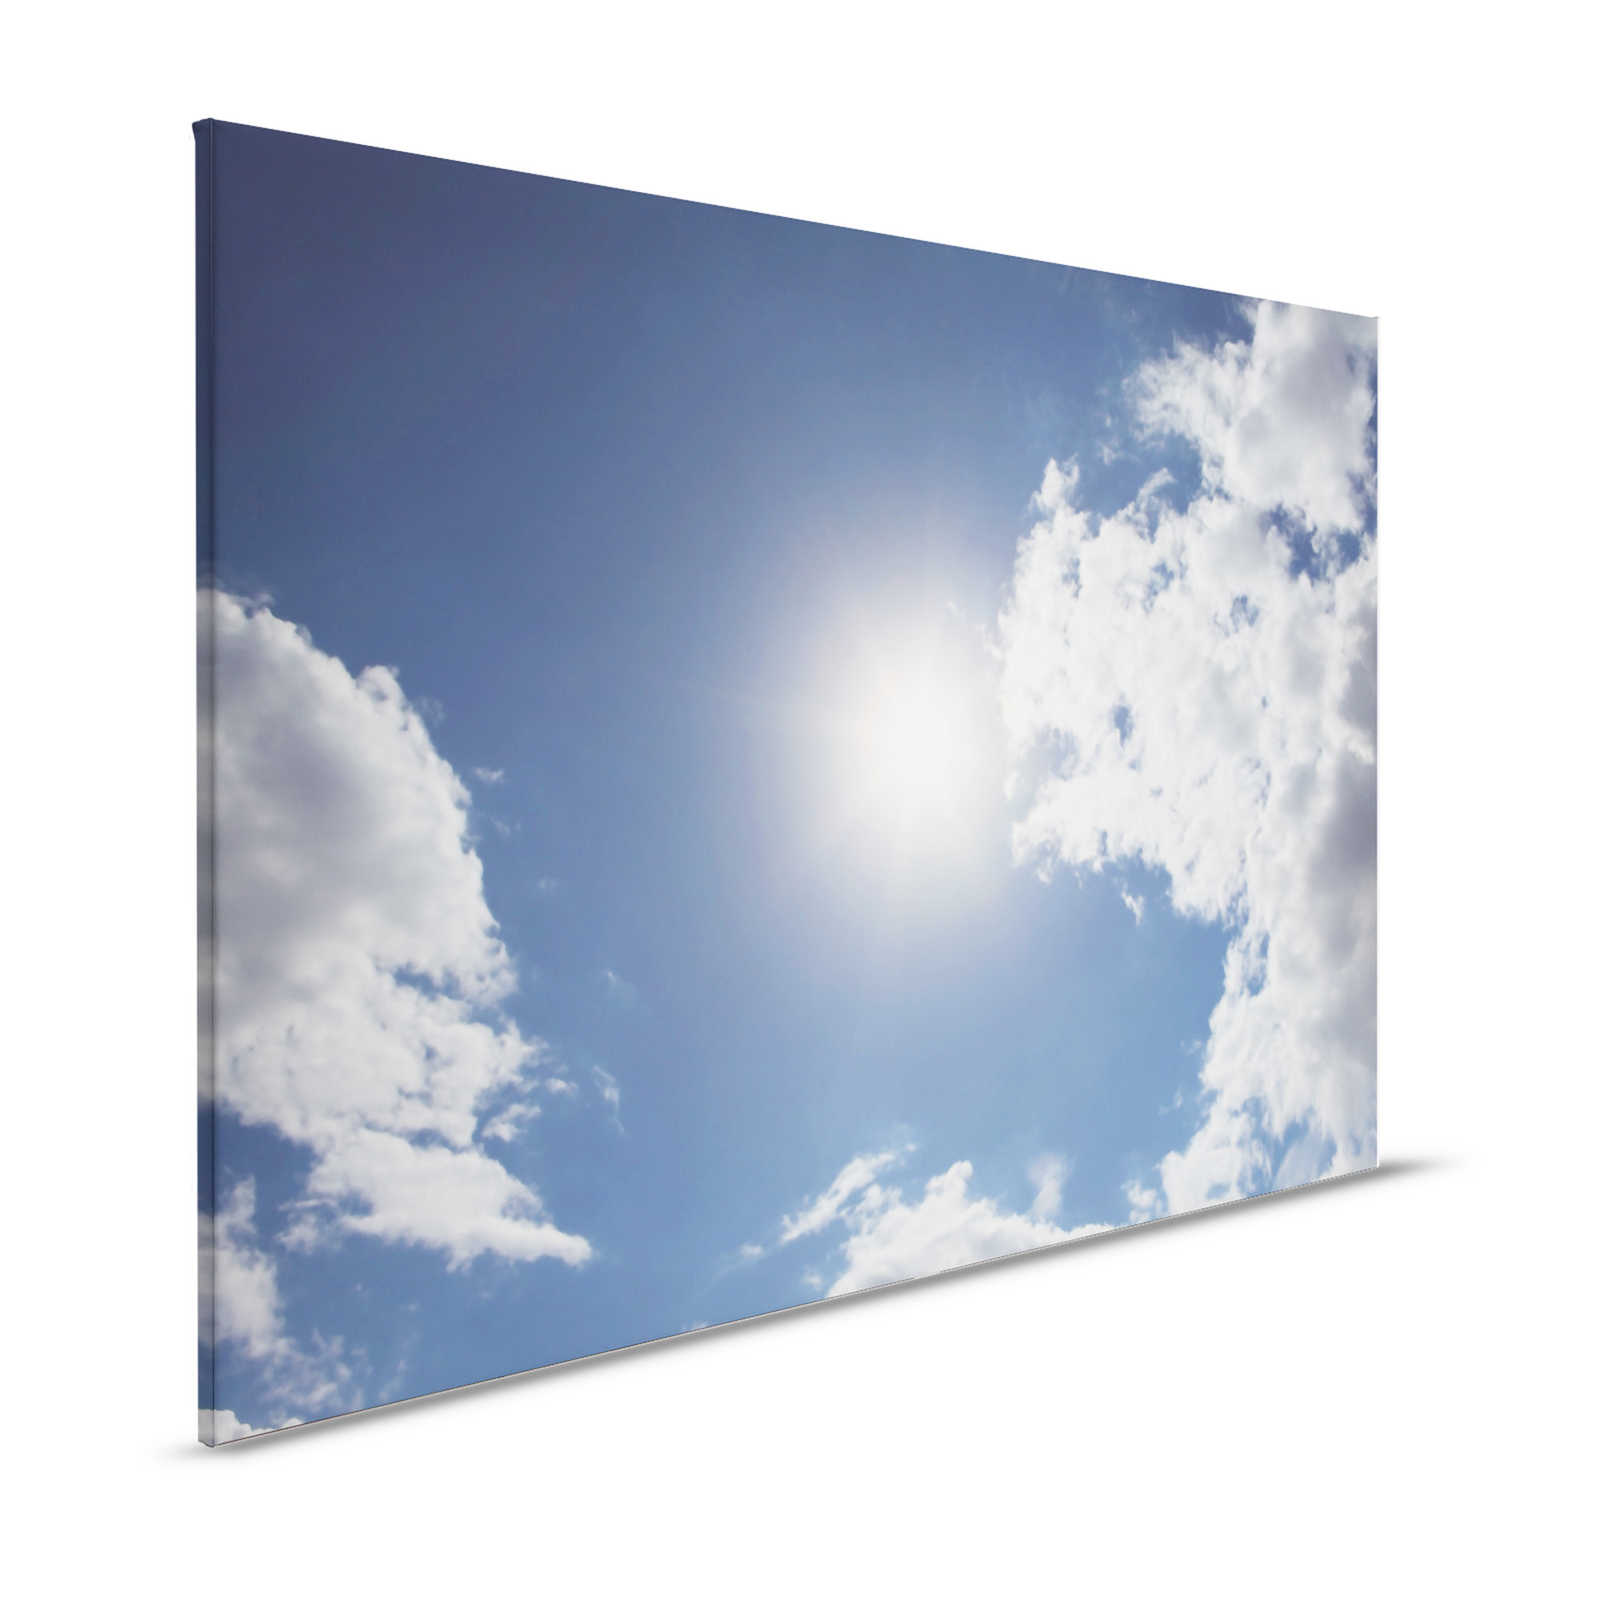 Cielo azul - Pintura en lienzo Sol y cielo nublado azul - 1,20 m x 0,80 m
